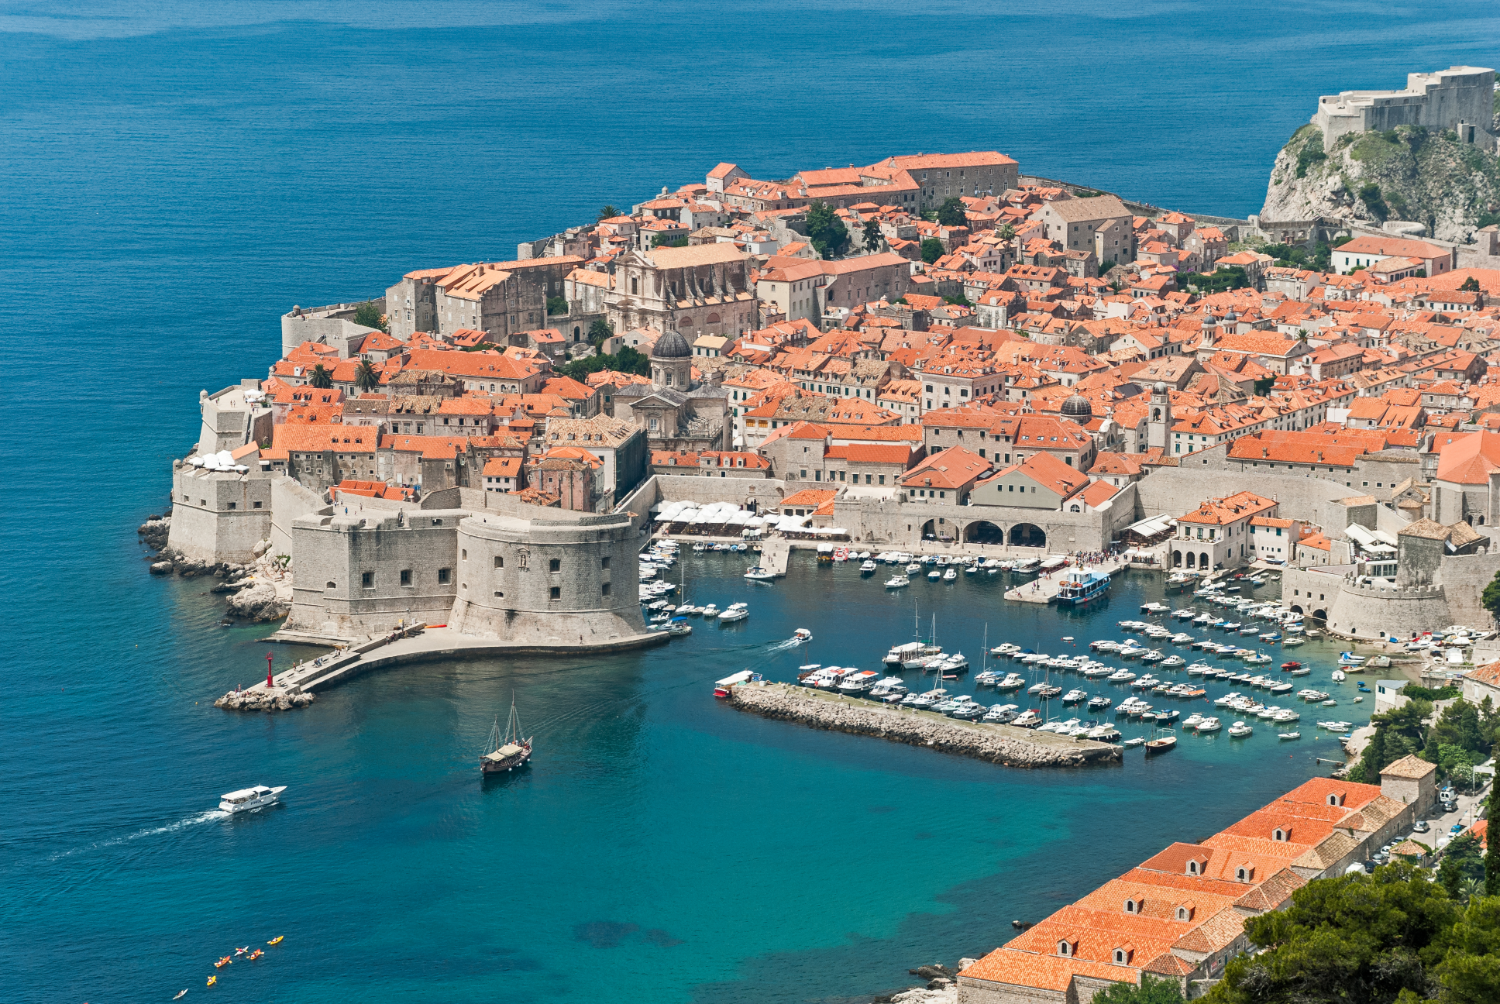 Dubrovnik (Croacia) es conocida por su centro medieval.